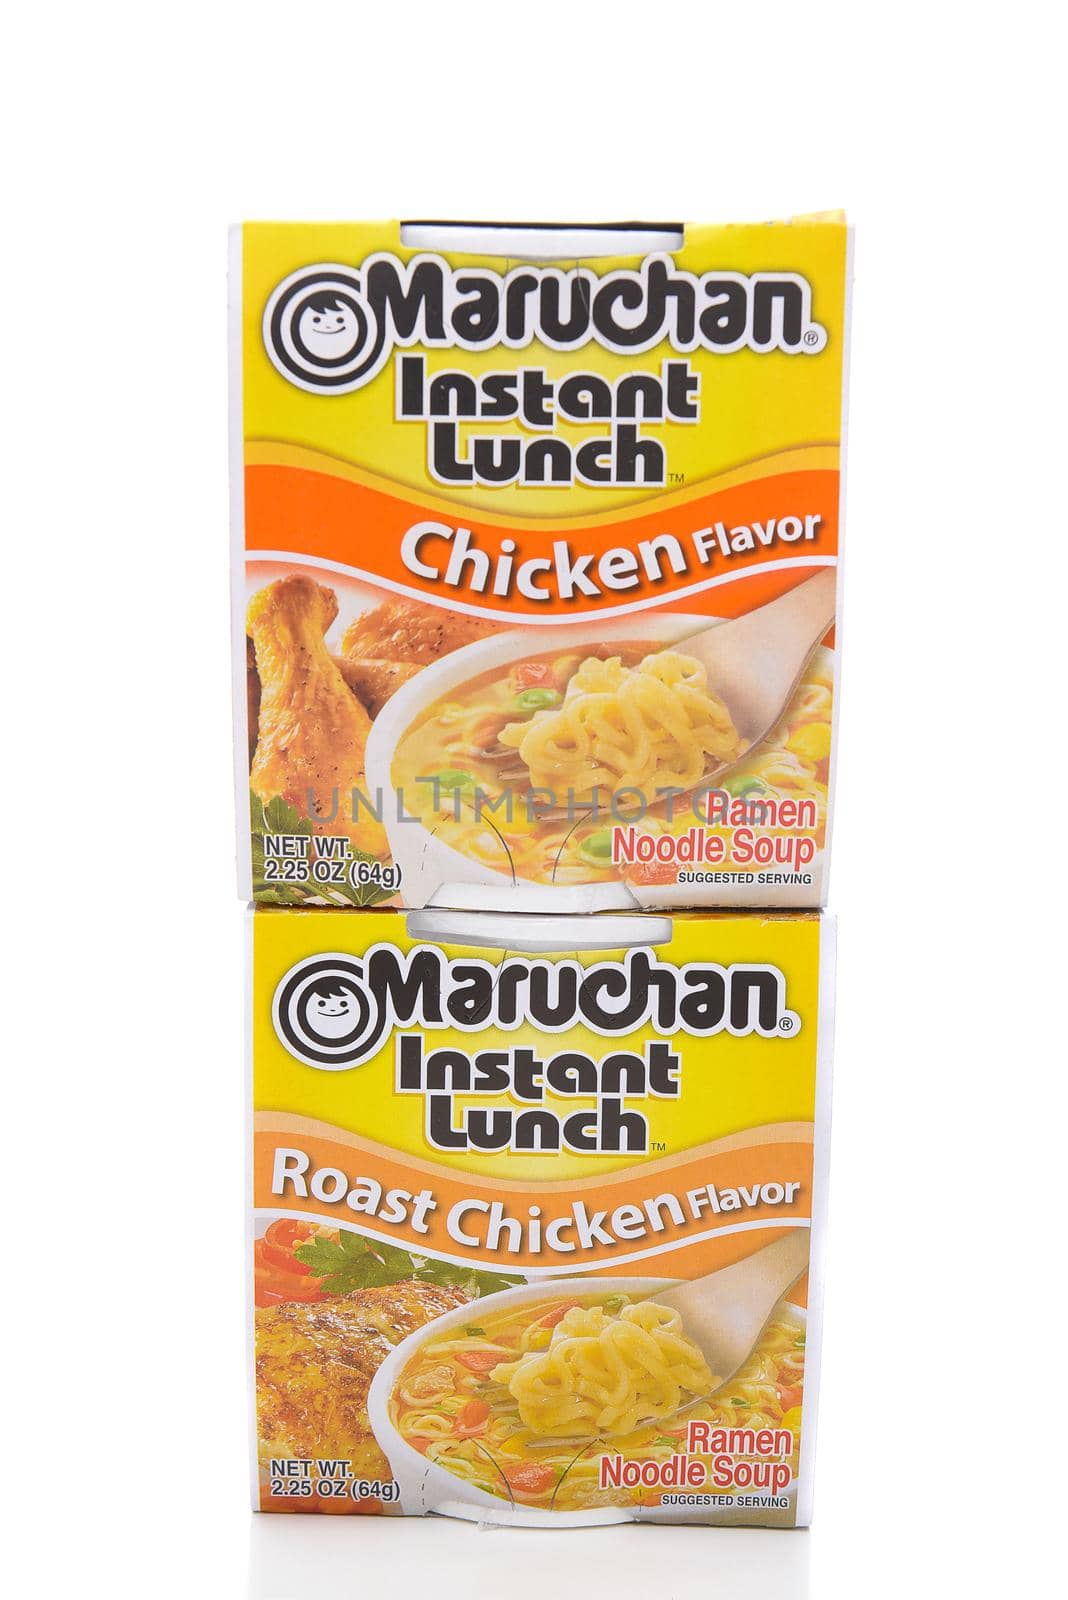 Maruchan Instant Lunch Chicken Flavor by sCukrov